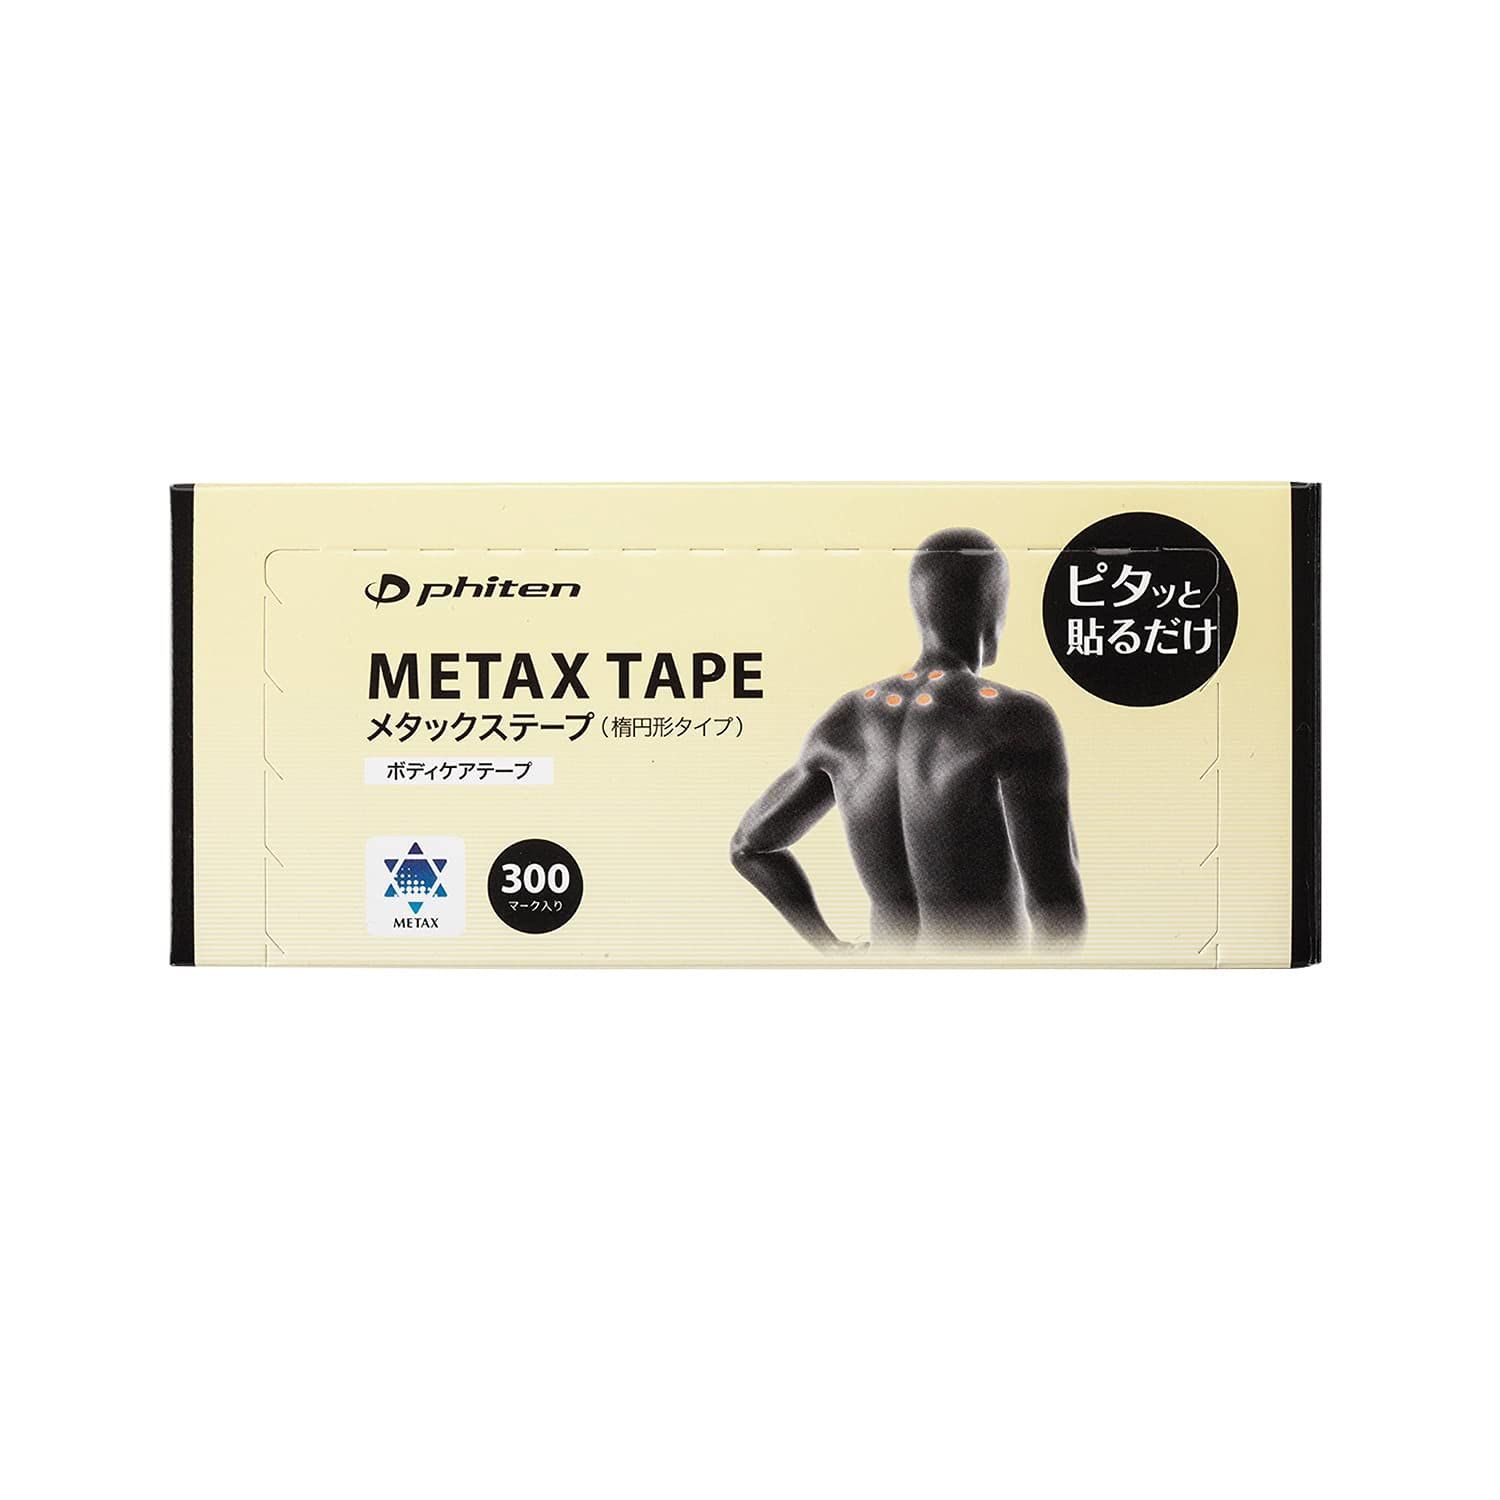 ファイテン メタックステープ 30マーク ハイパワーテープ 高評価